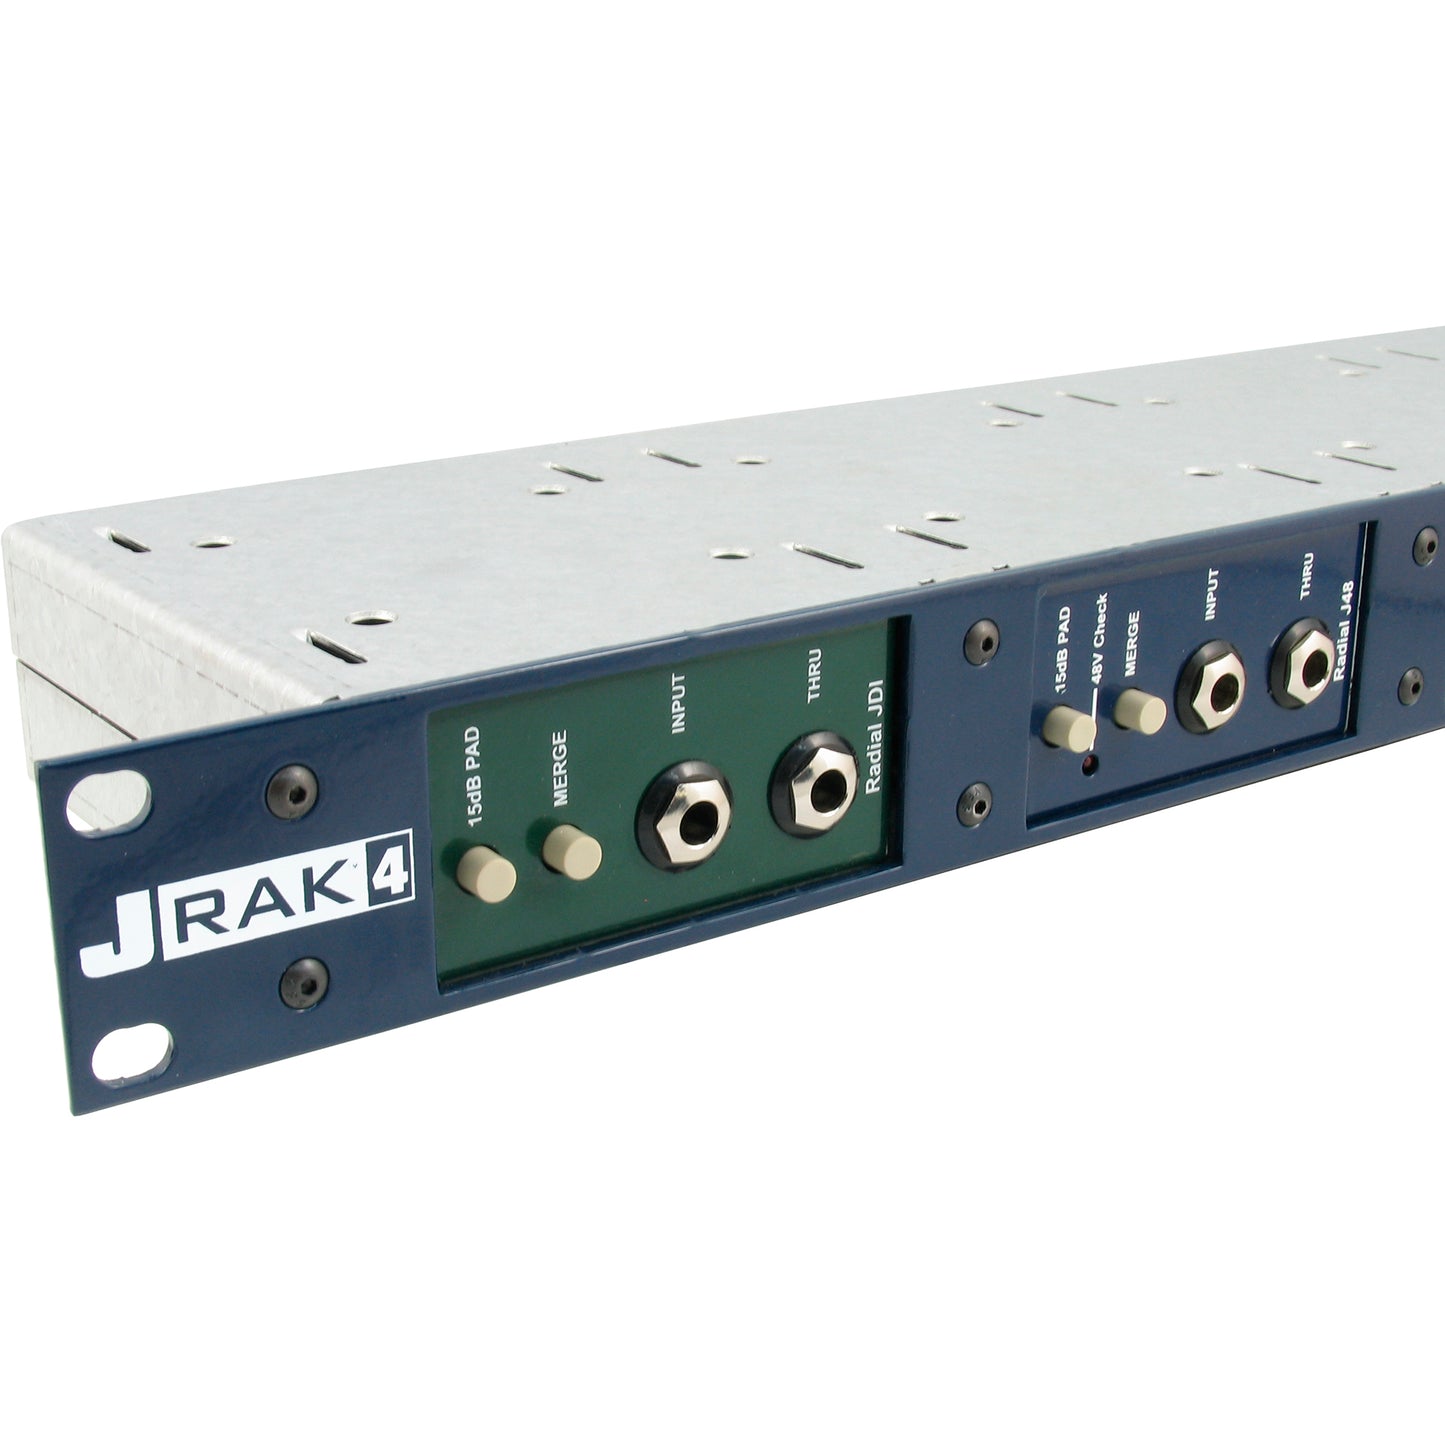 Radial J-RAK4 Rack Adaptor